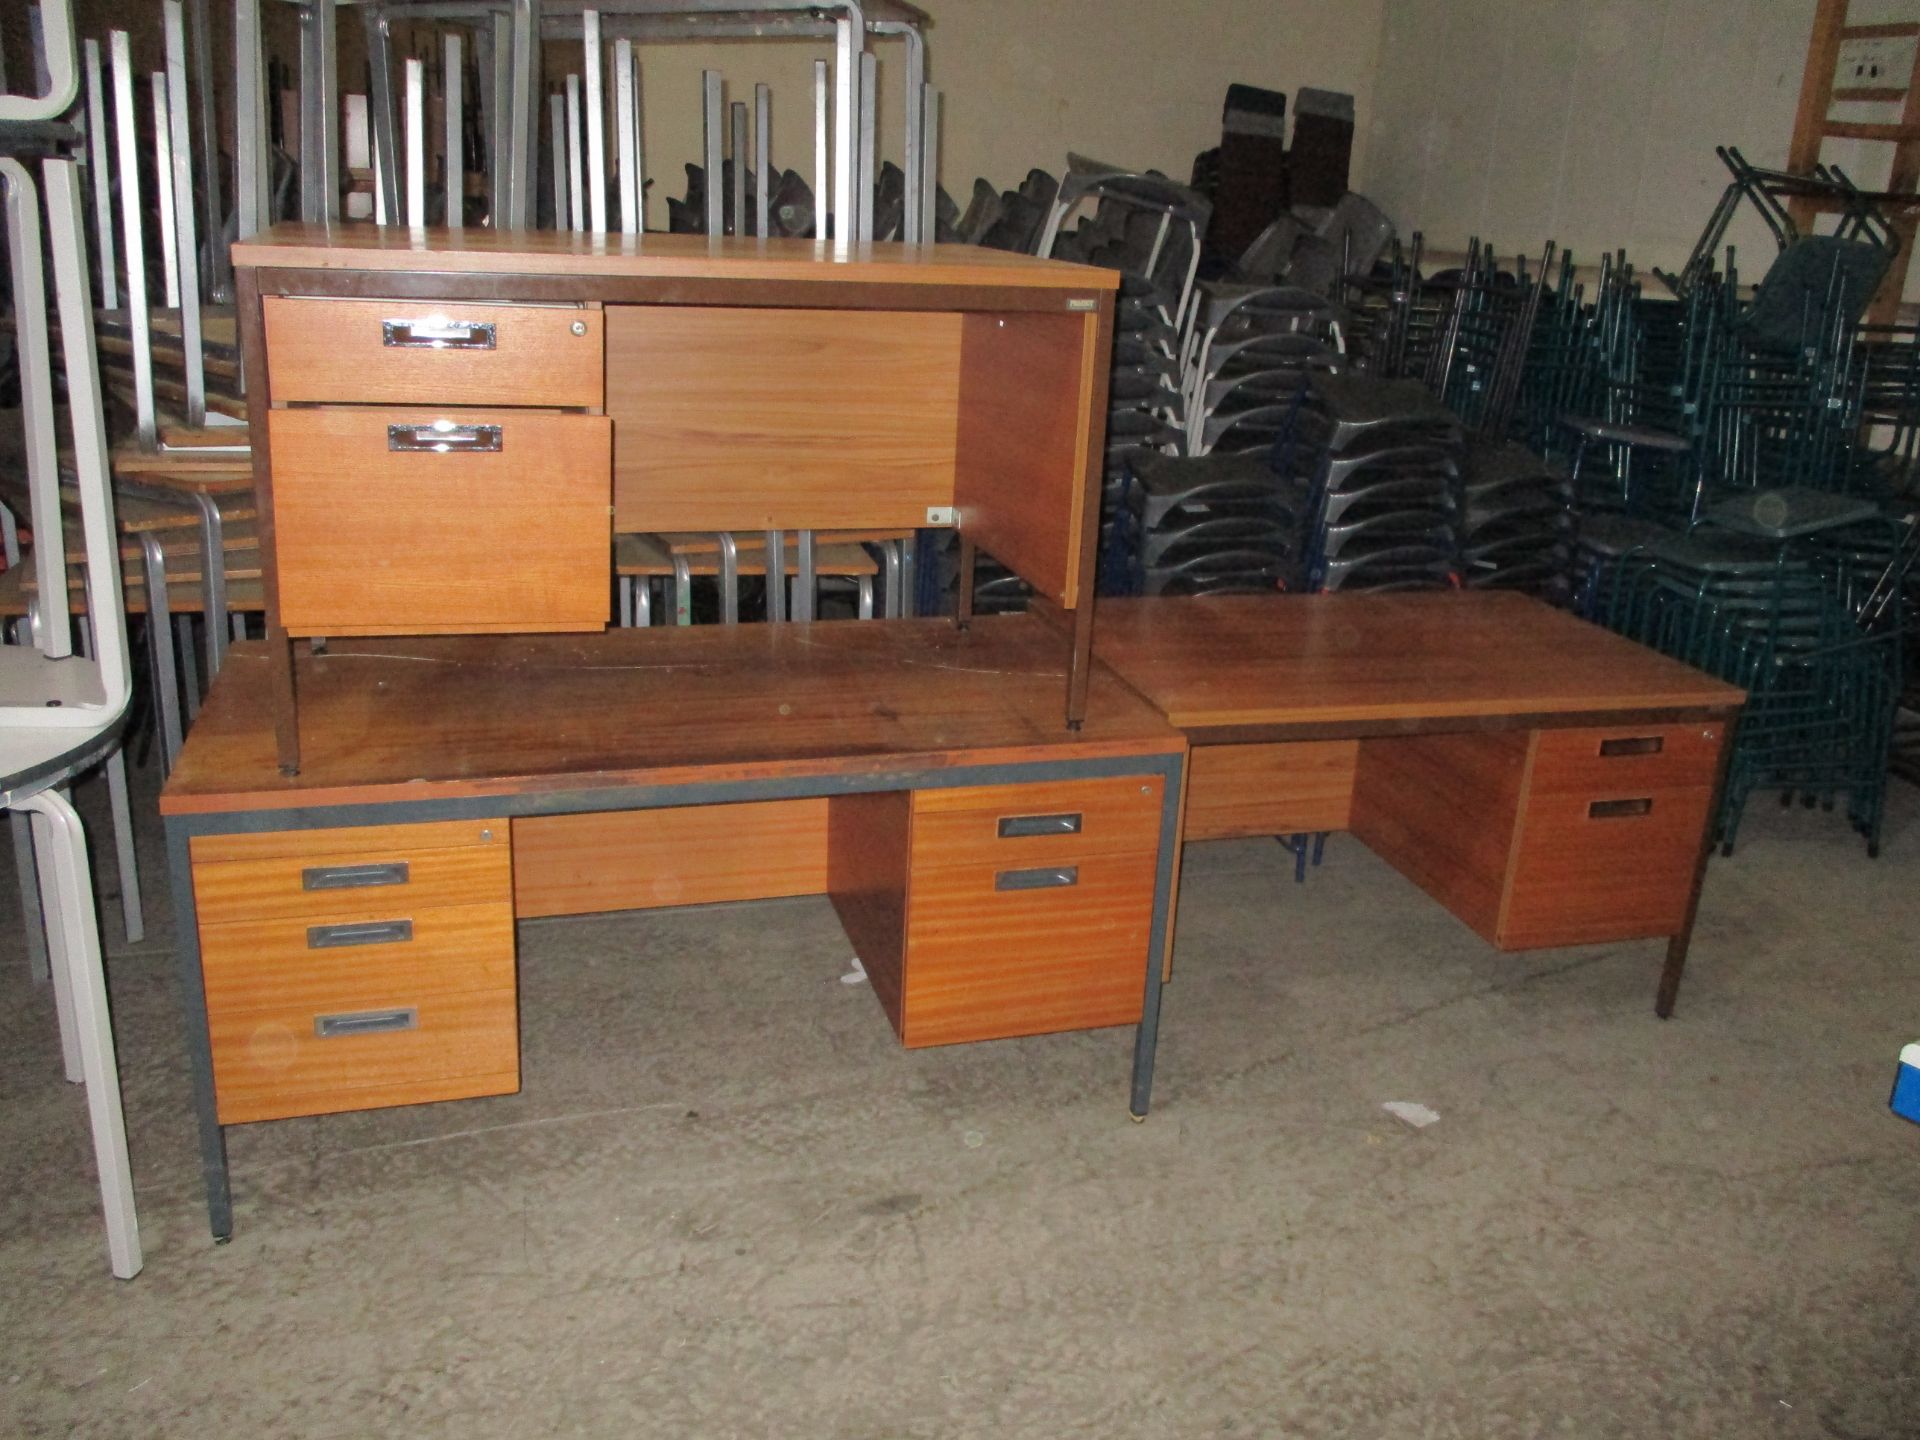 3 X Dark Wood Desks